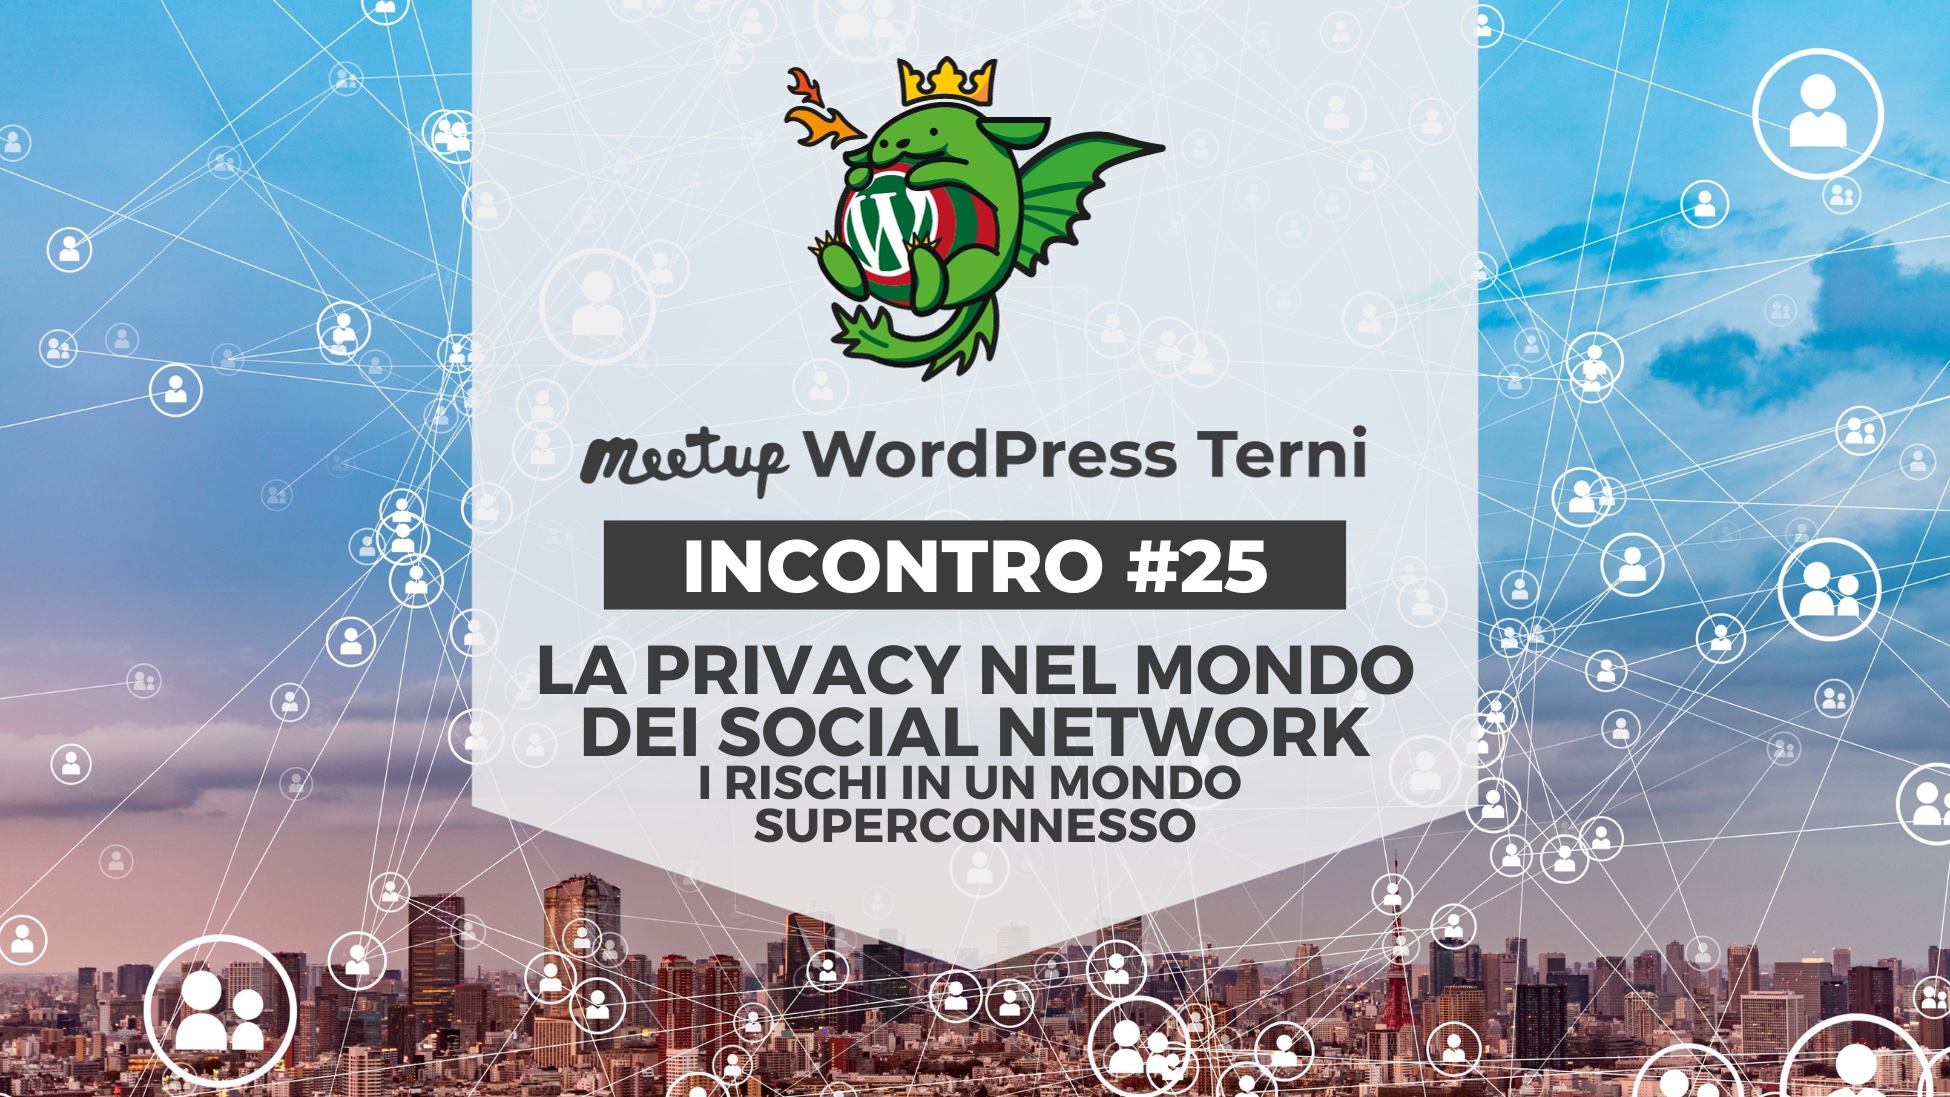 WordPress Meetup Terni #25: La Privacy nel mondo dei social network